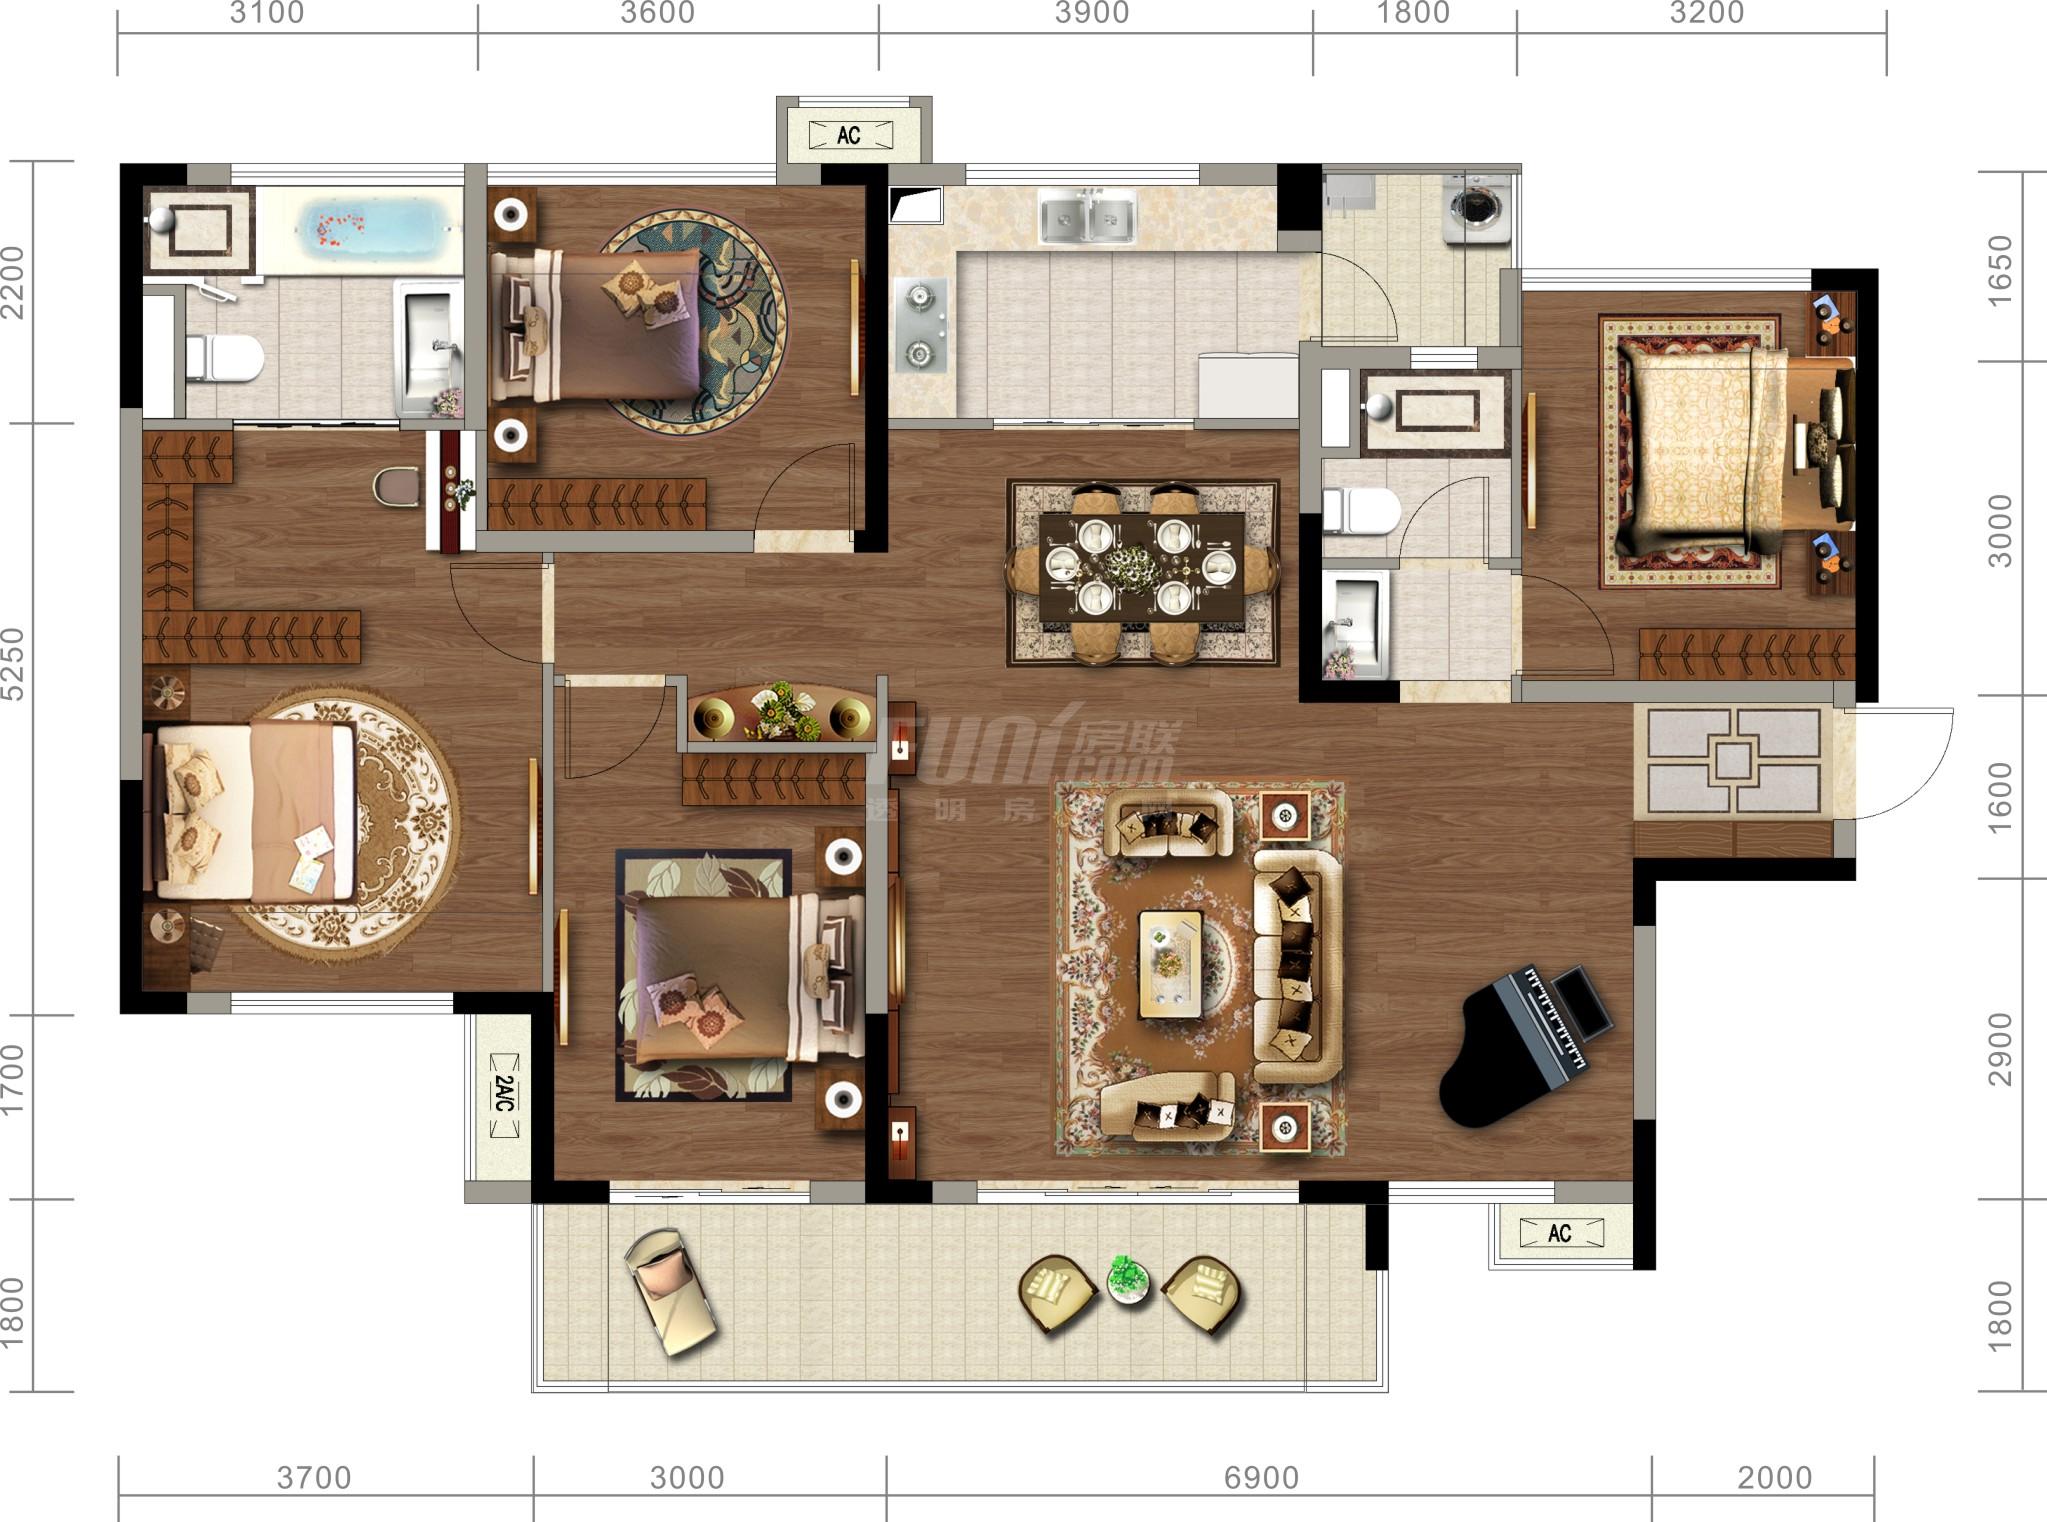 现代四室两厅户型住宅透视草图大师模型，四室两厅户型住宅透视sketchup模型下载 - sketchup网